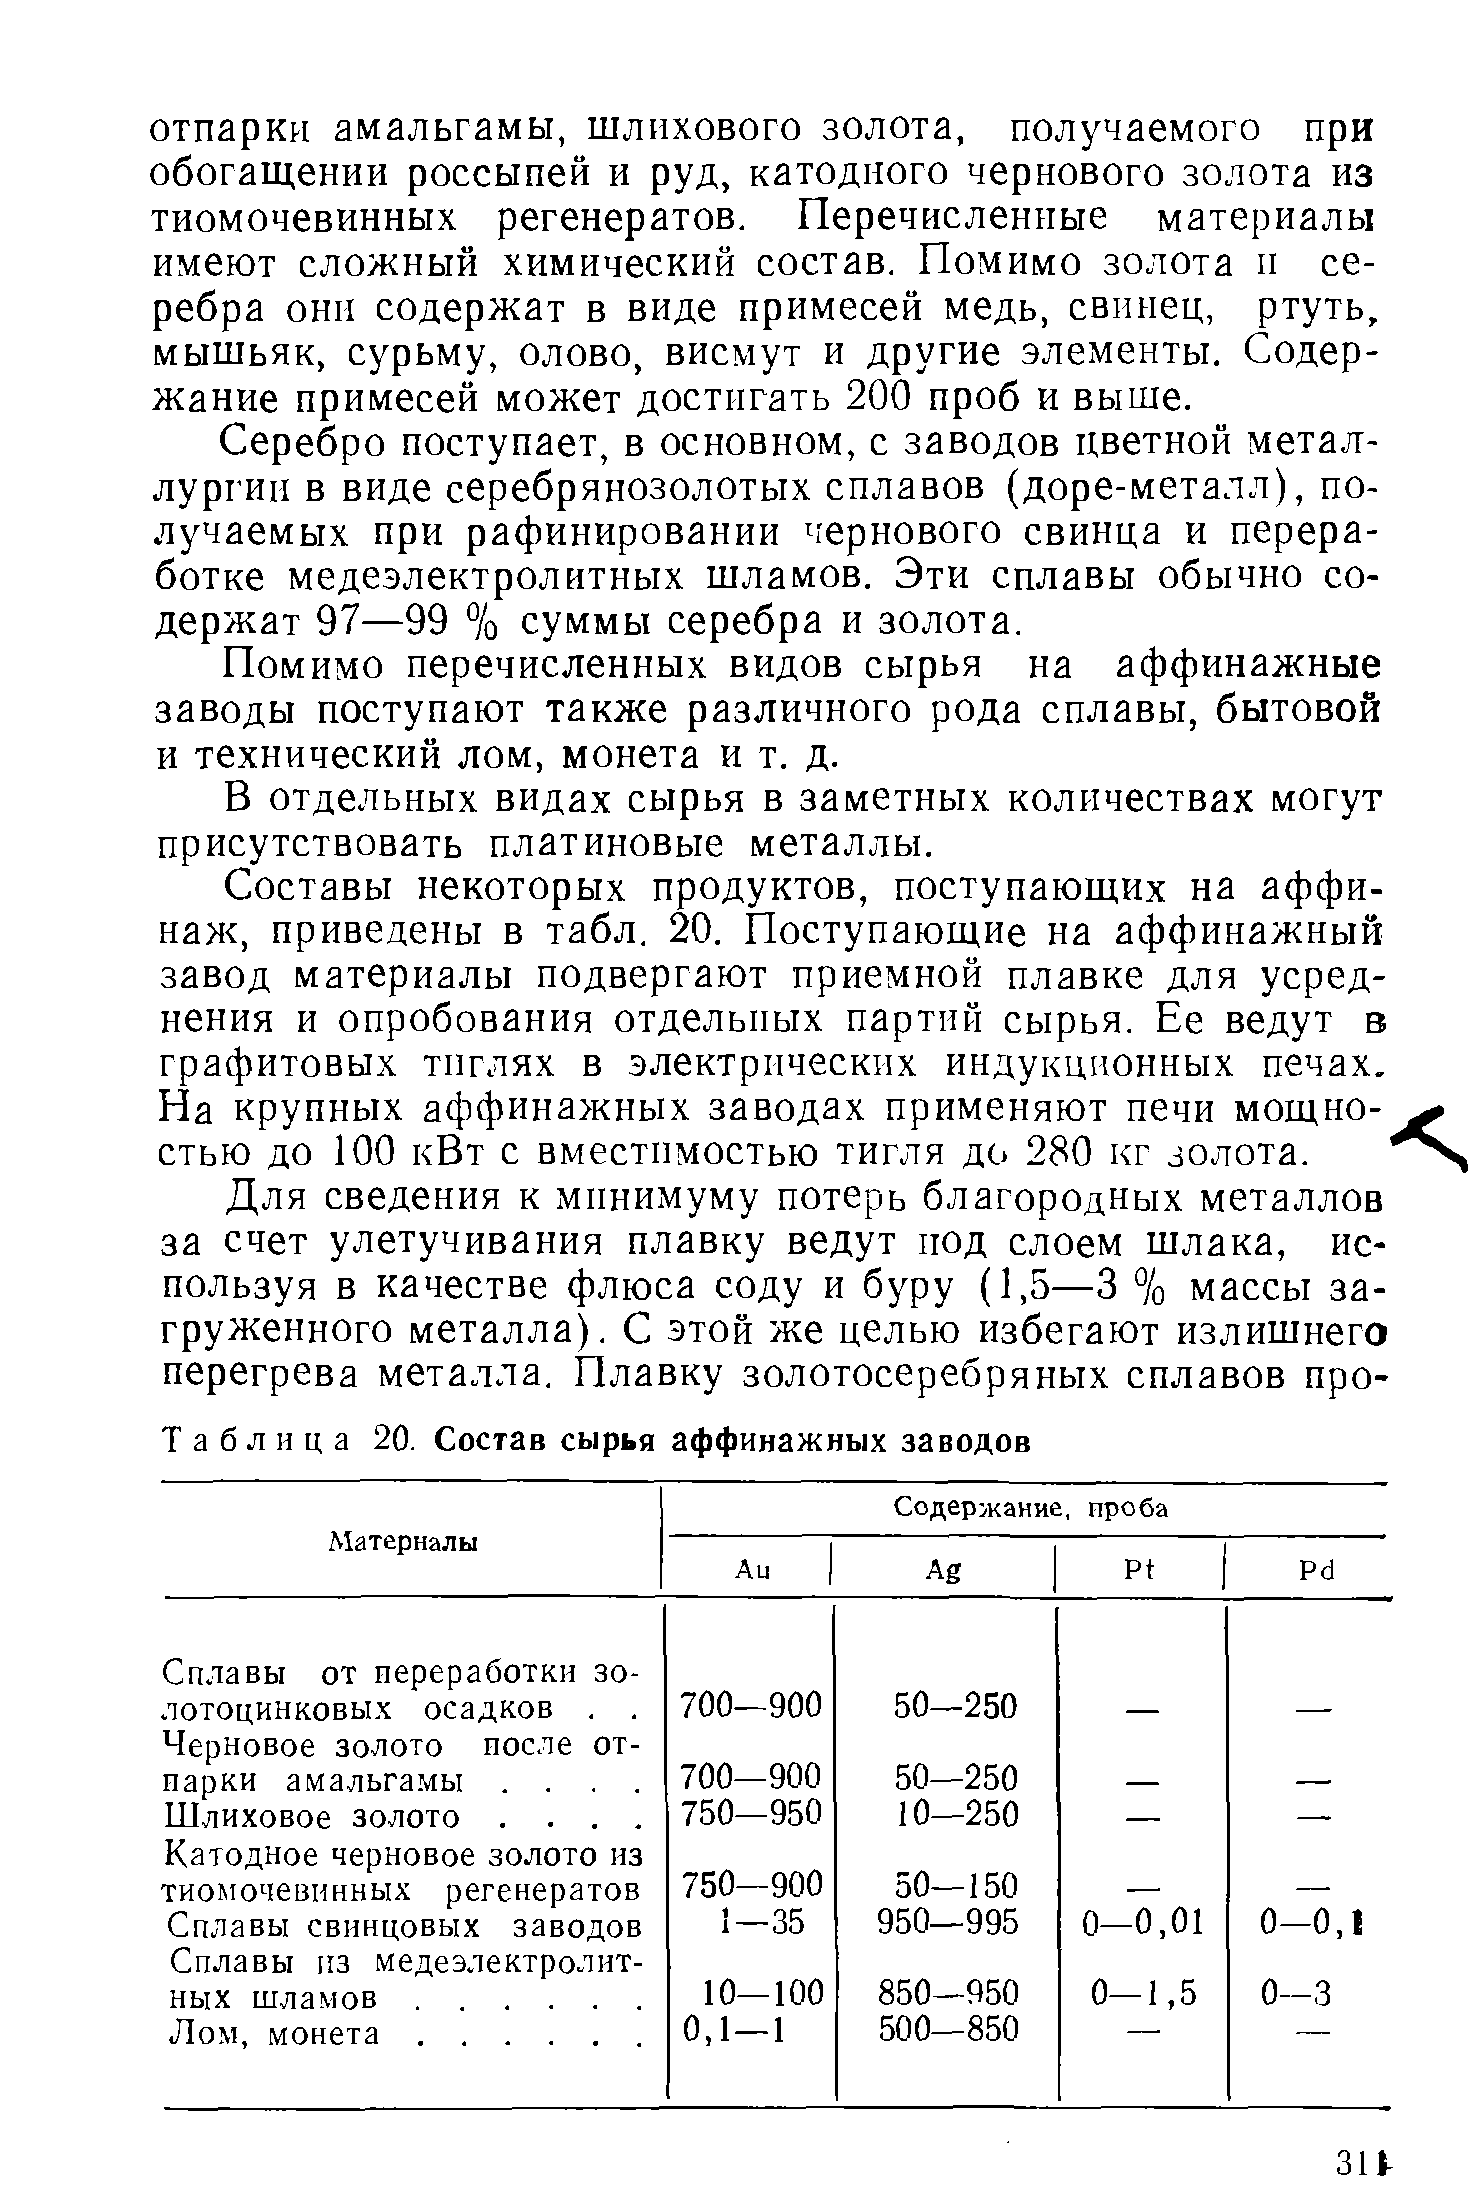 Таблица 20. Состав сырья аффинажных заводов
